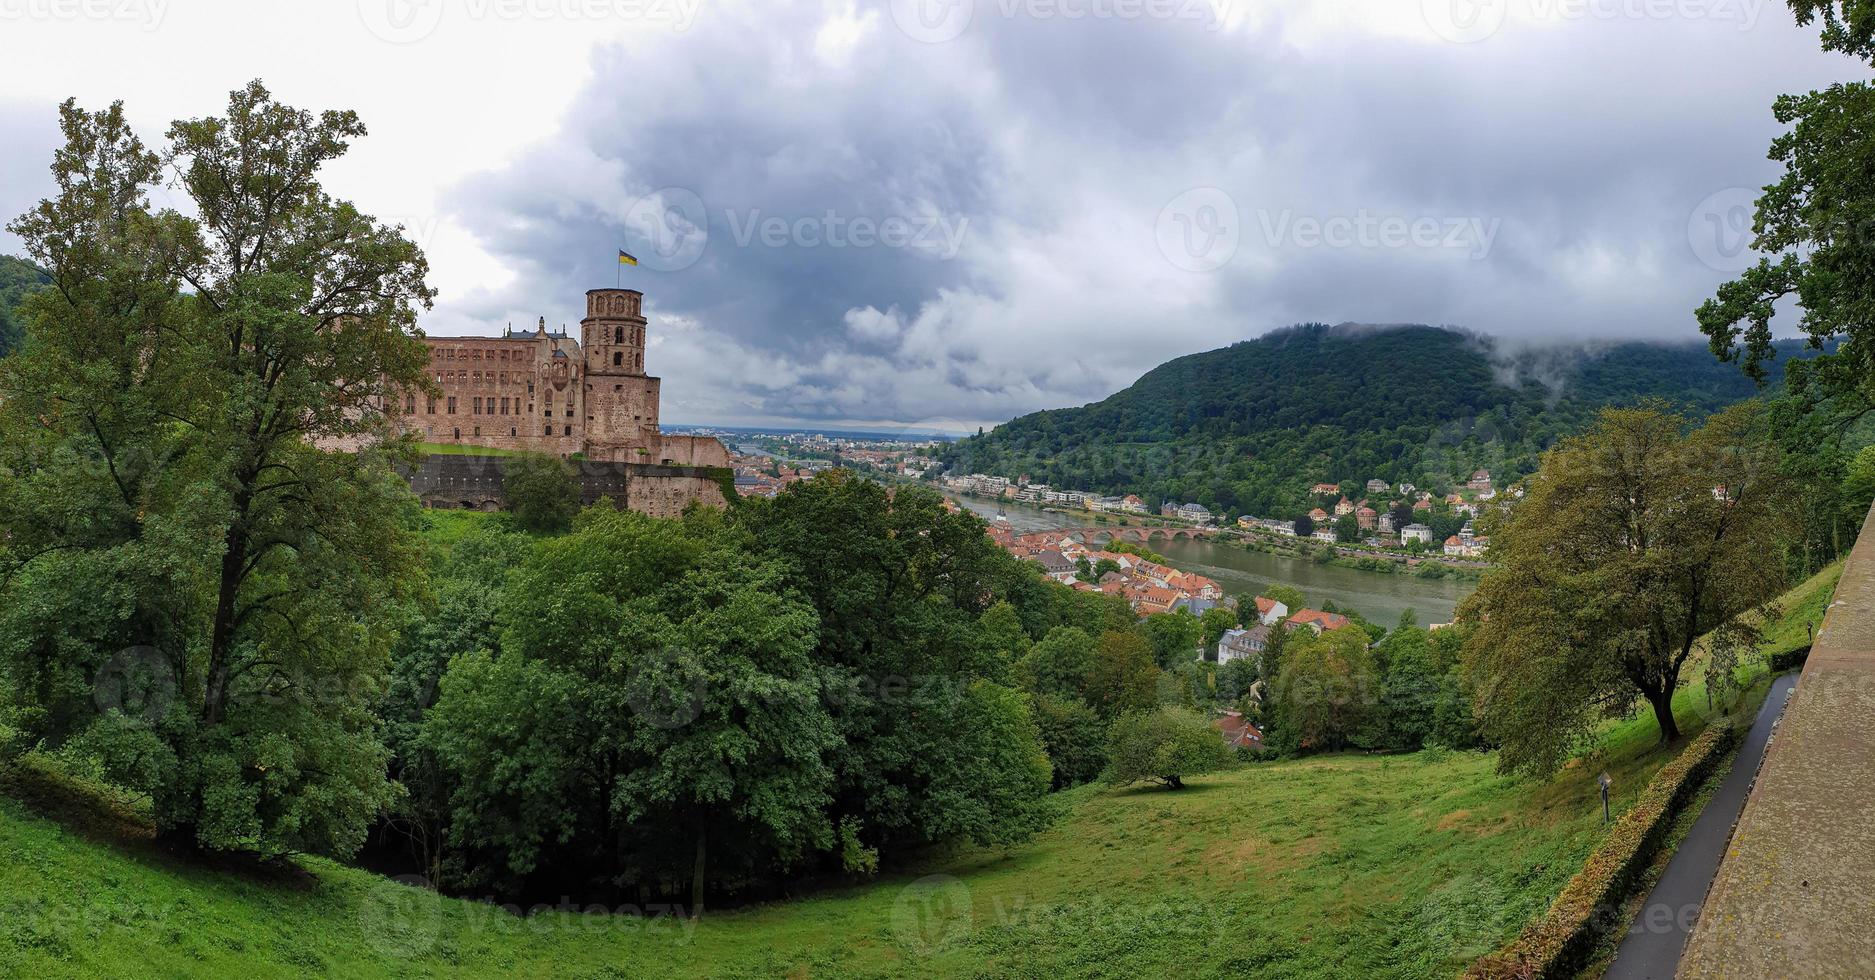 panorama do palácio de heidelberg e da cidade medieval de heidelberg, alemanha foto